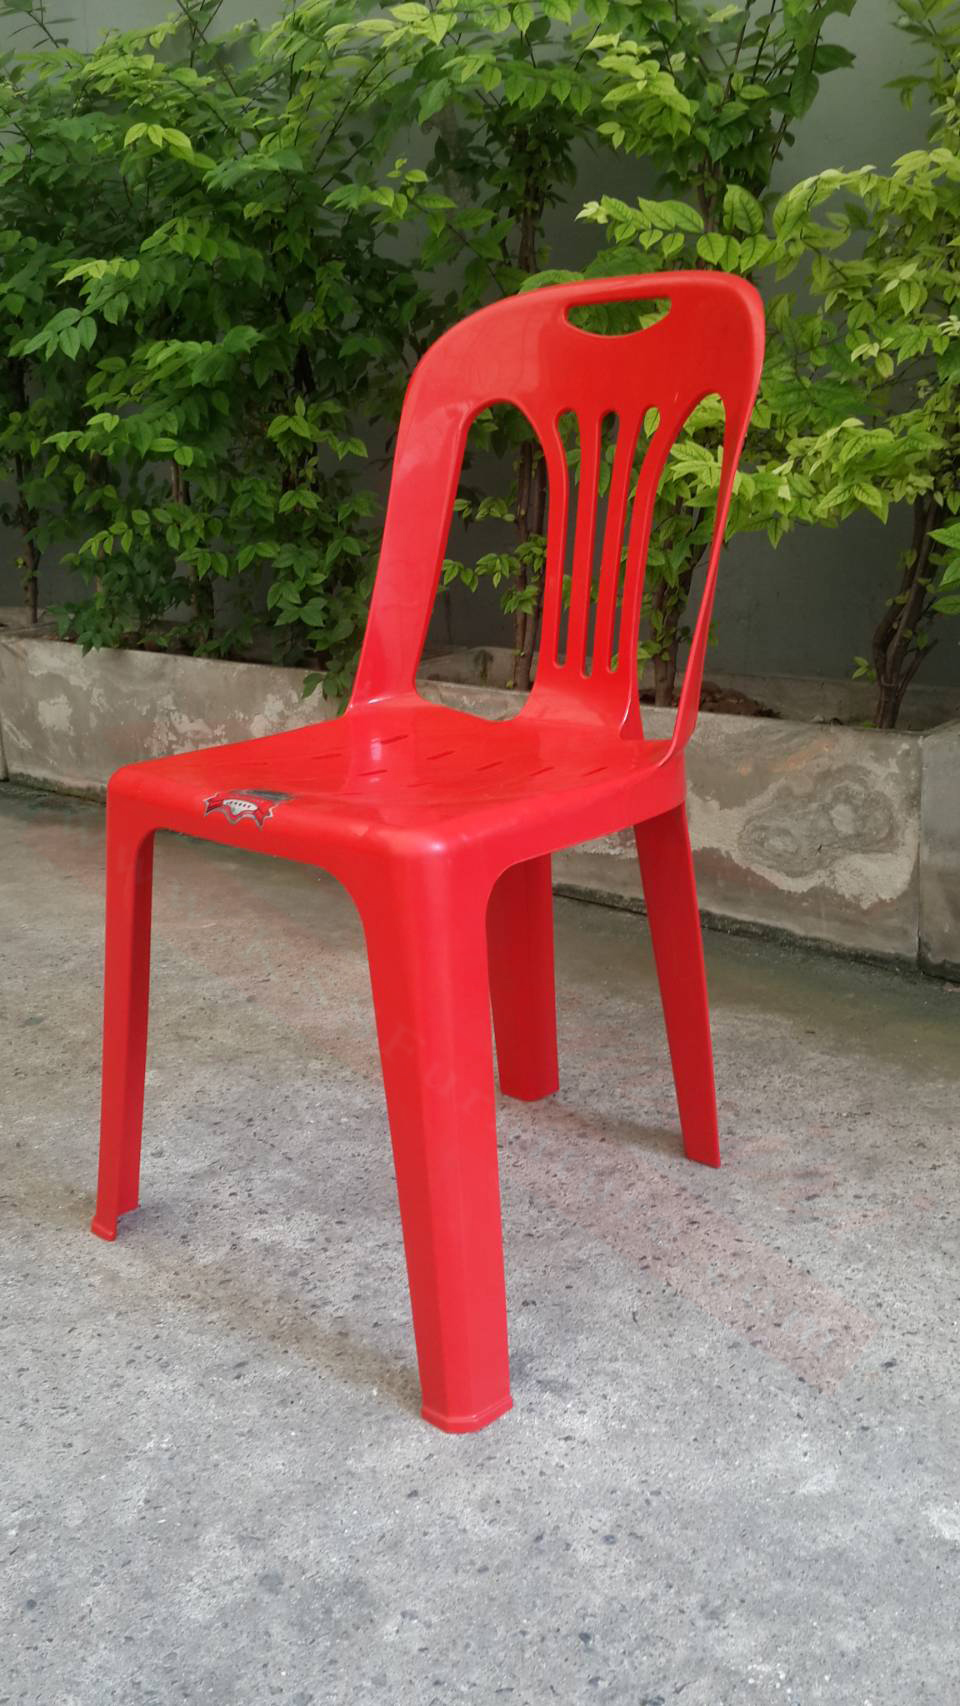 49033::PN9155A(กล่องละ 10 ตัว)::เก้าอี้พลาสติก ขนาด500x520x810มม. สามารถวางซ้อนกันได้ มีให้เลือก2สี น้ำเงิน,แดง เก้าอี้พลาสติก ไพรโอเนีย ไพรโอเนีย เก้าอี้พลาสติก